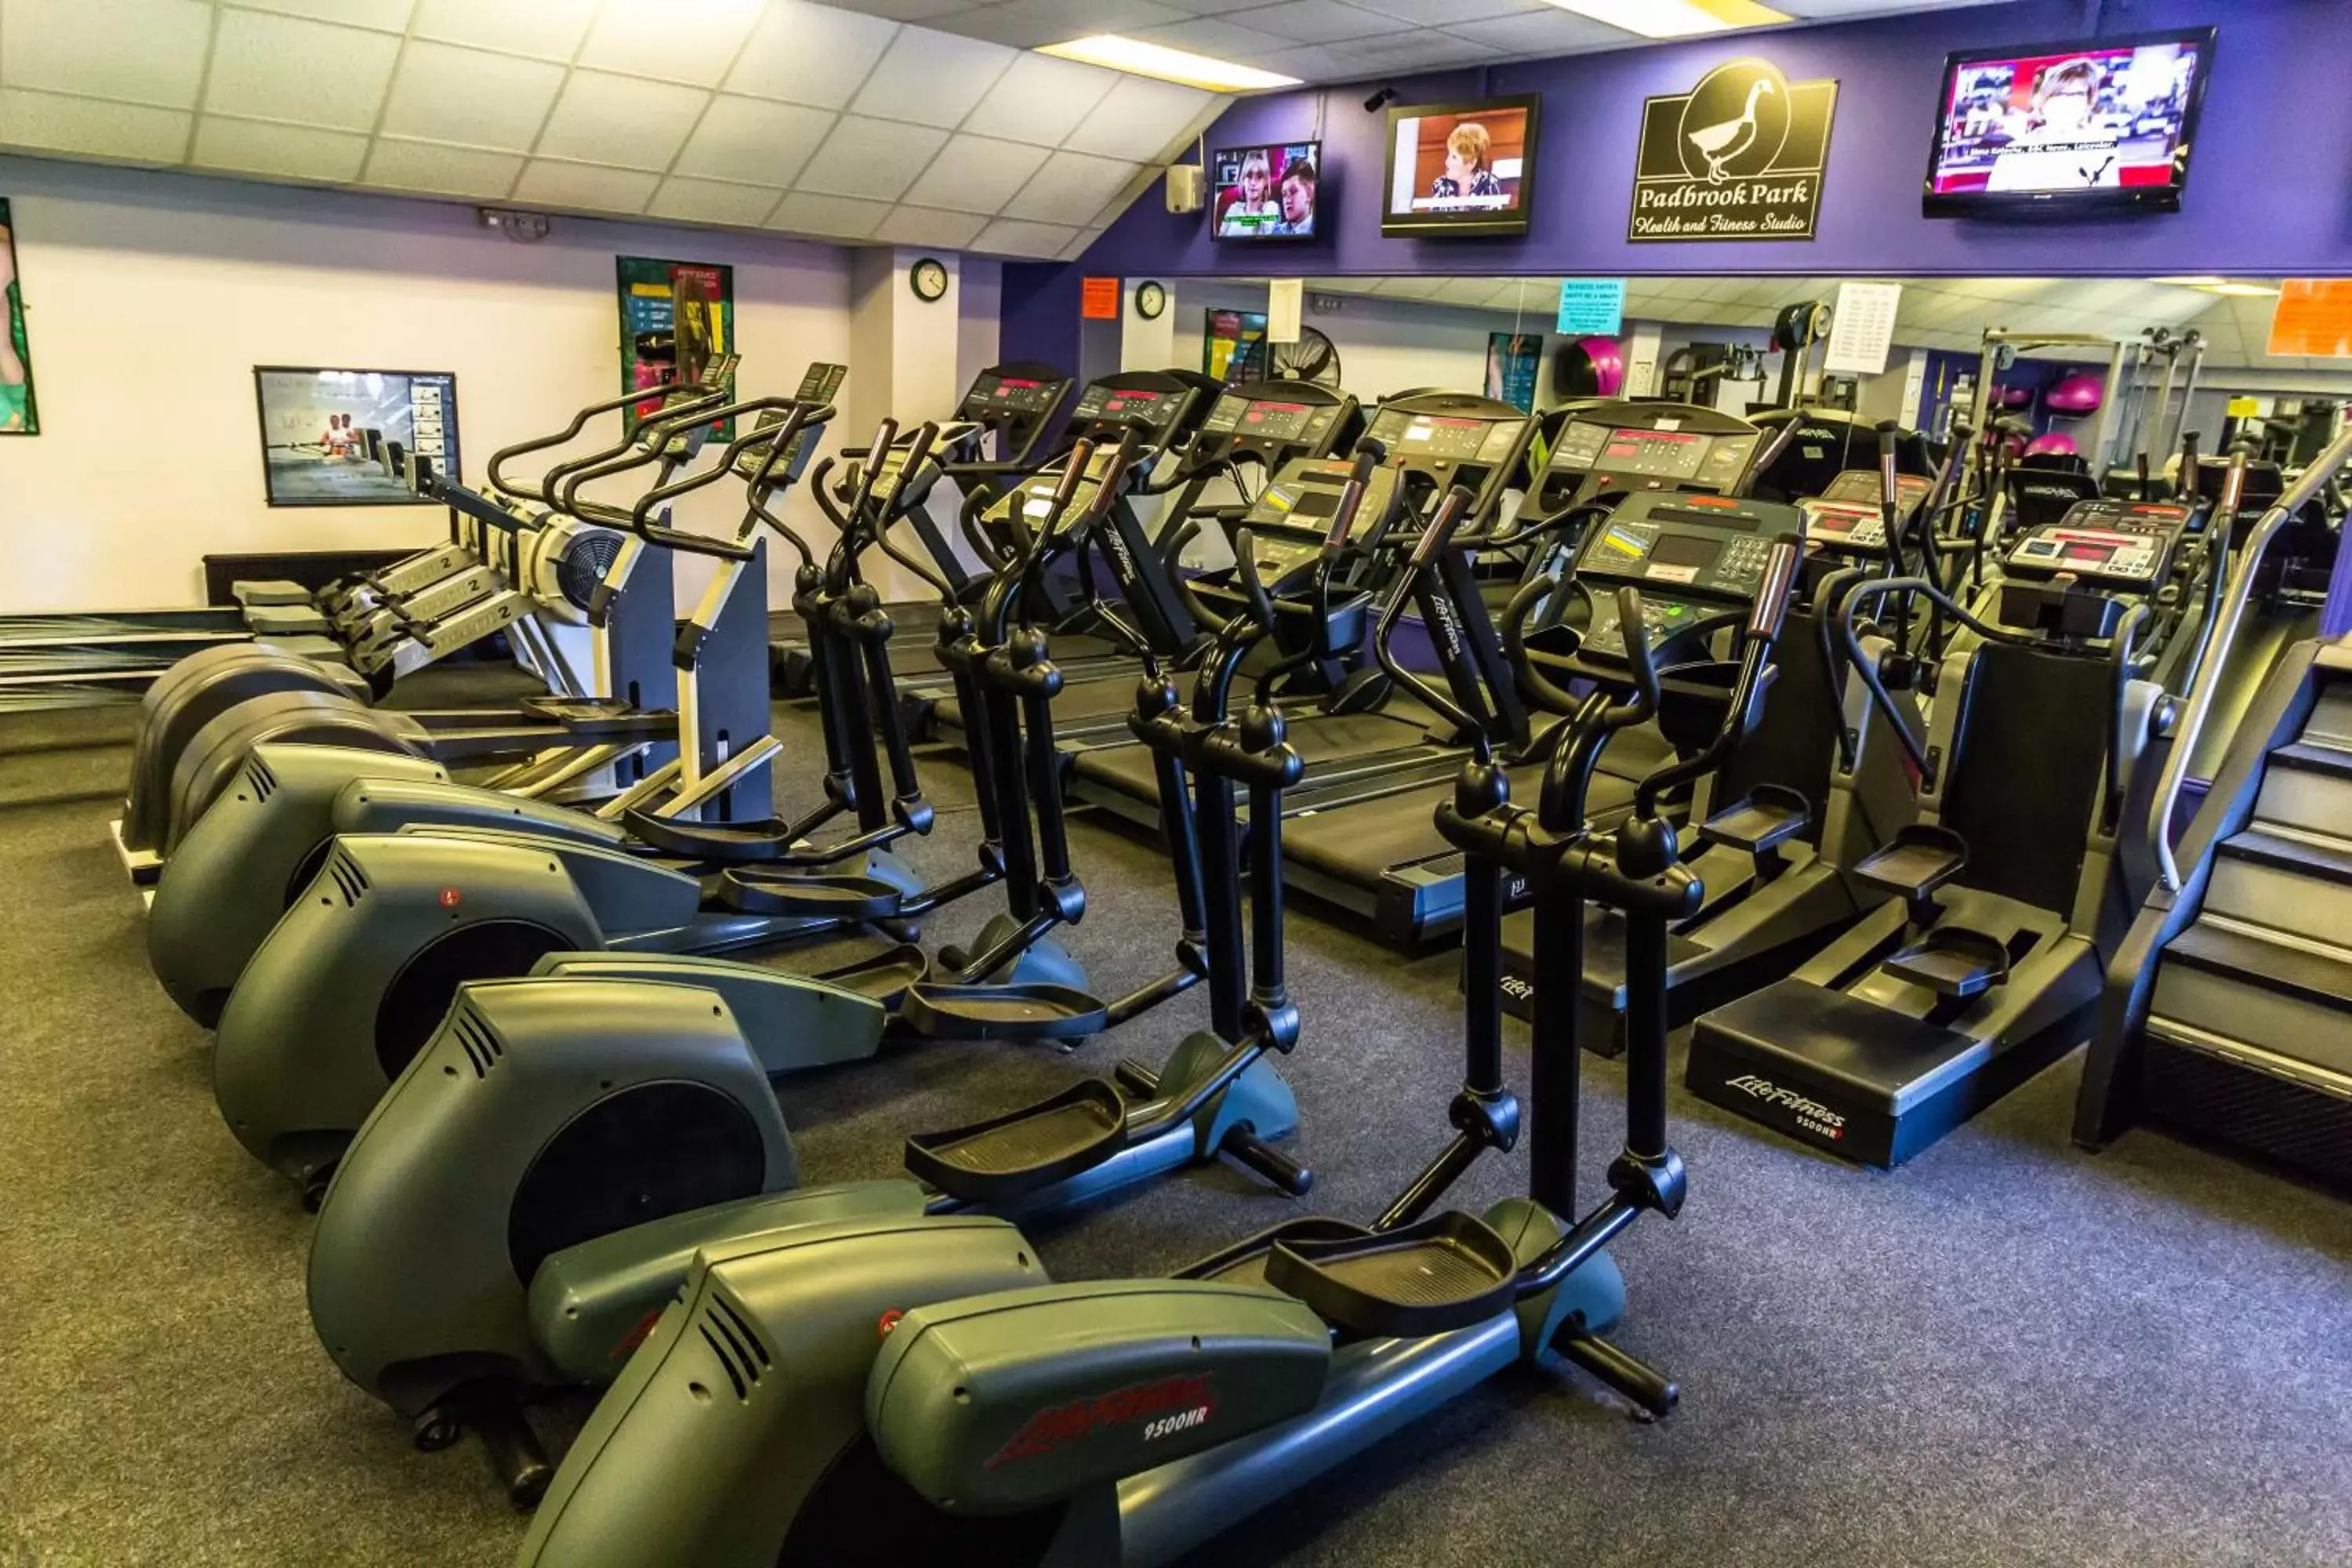 Fitness centre/facilities, Fitness Center/Facilities in Padbrook Park Hotel